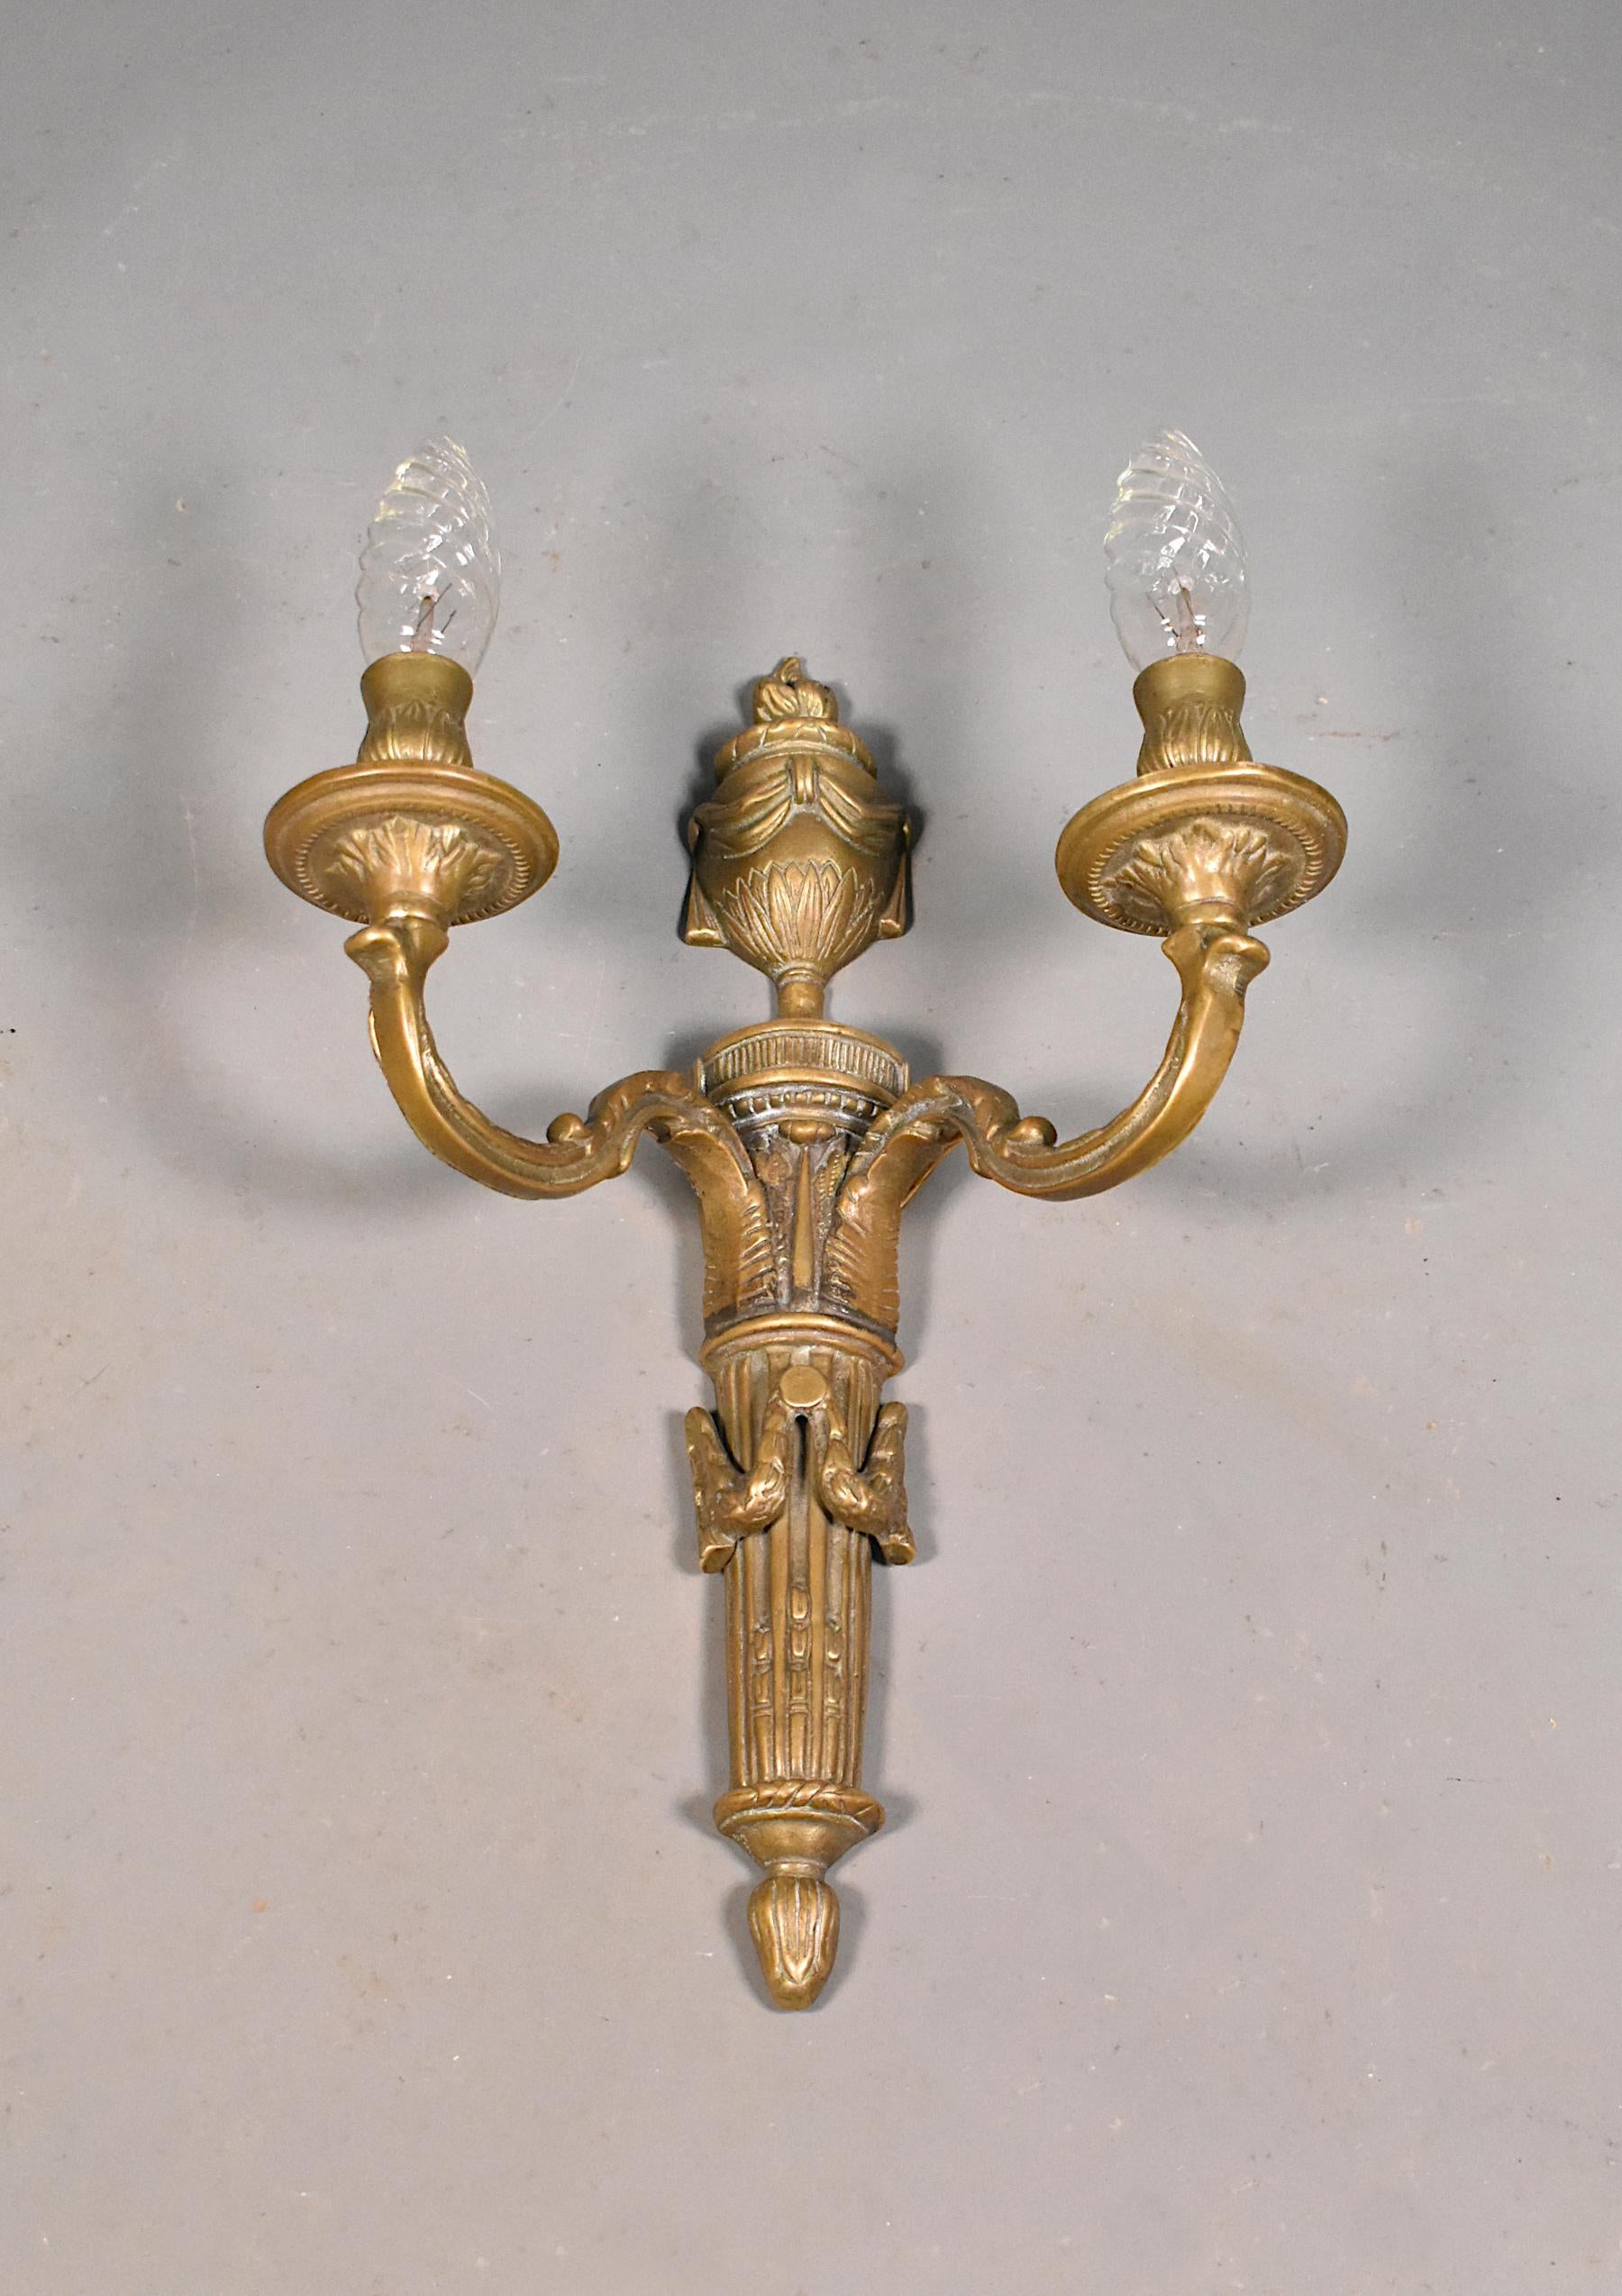 Großer antiker französischer Wandleuchter aus Bronze Napoleon III (19. Jahrhundert).

Diese große dekorative Wandleuchte aus Bronze zeichnet sich durch ausladende Arme mit floralen Details aus. Die Arme tragen zwei dekorative Kerzenlichter.